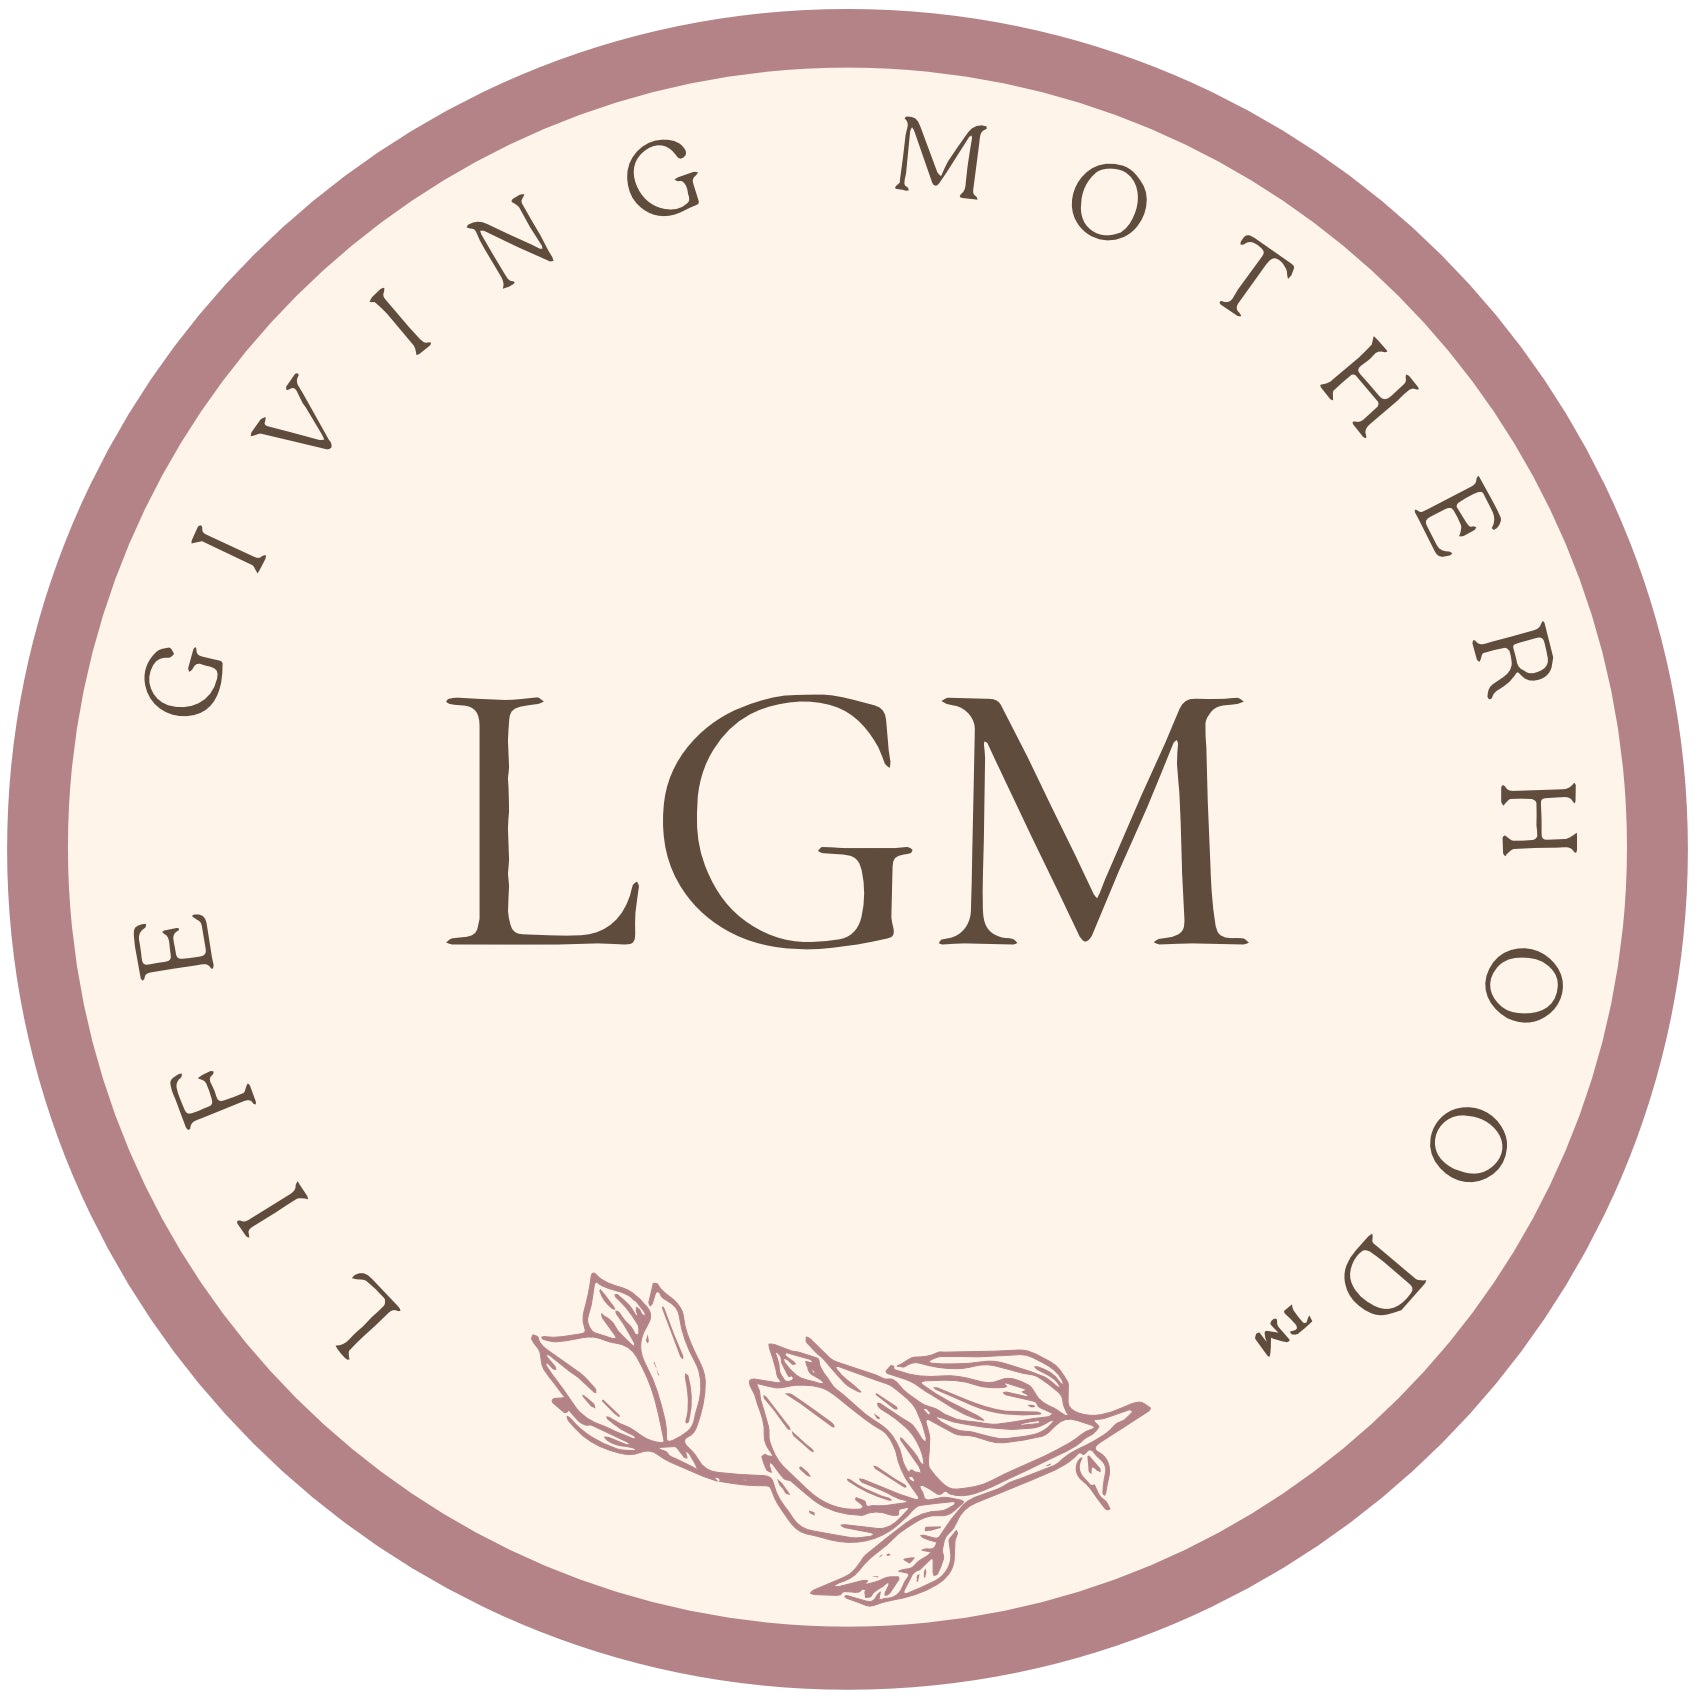 Life-giving Motherhood